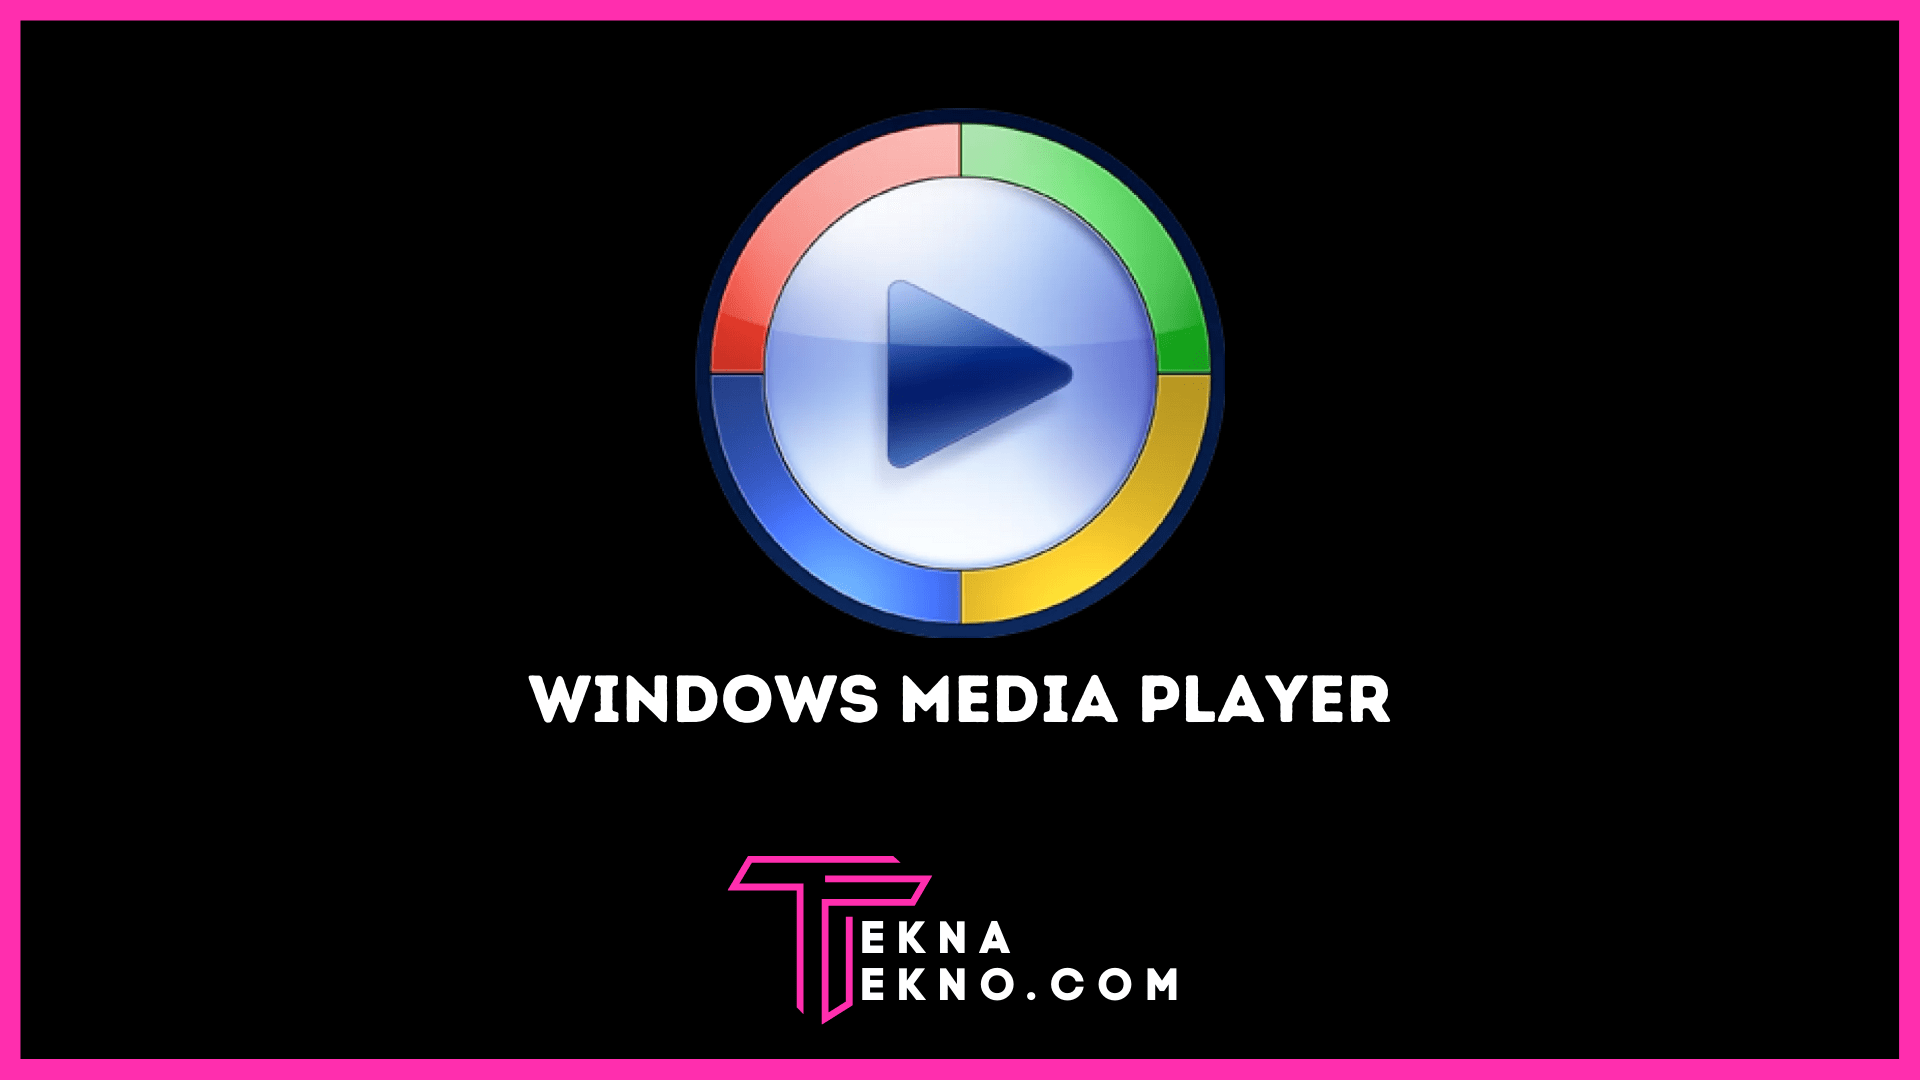 Windows Media Player Mengenal Fungsi Serta Kelebihan dan Kekurangannya